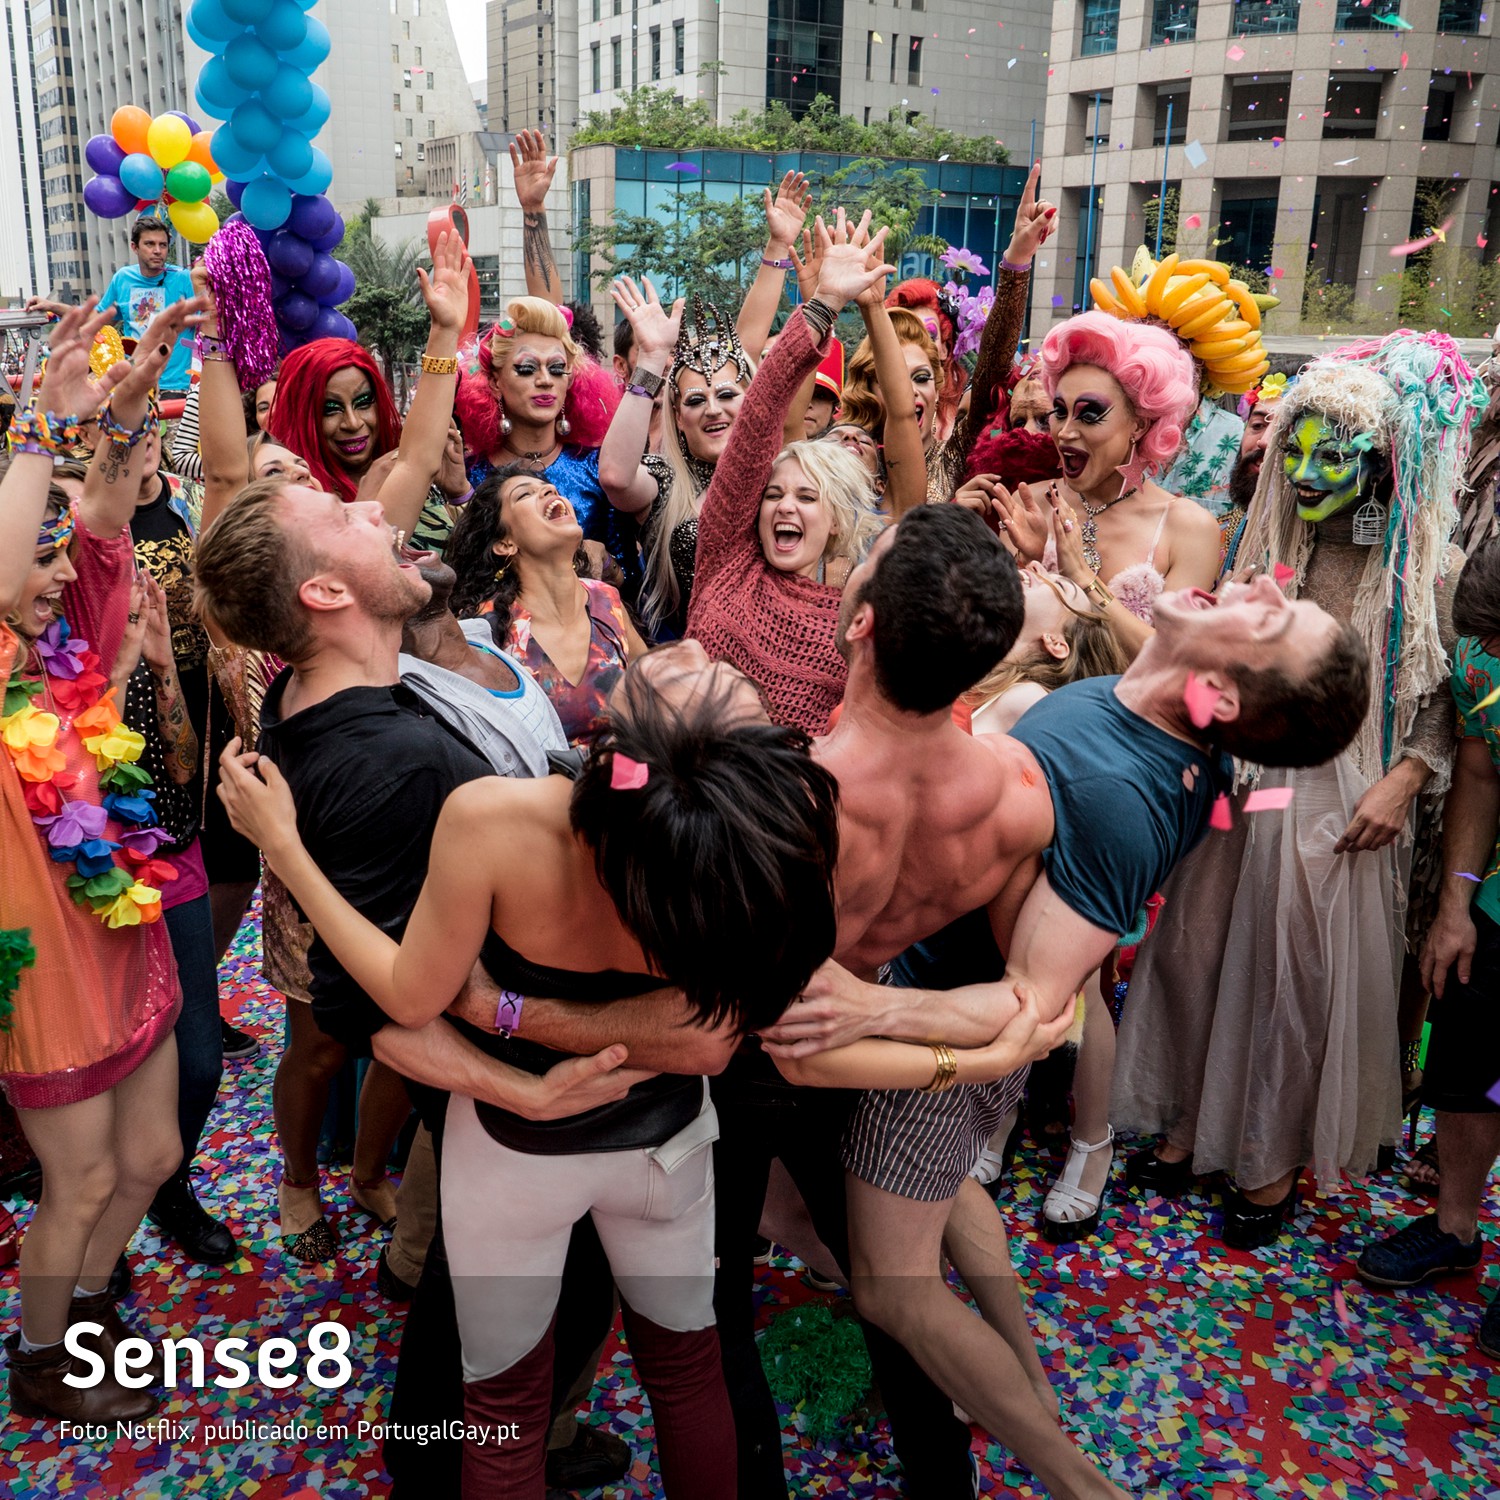 TELEVISO: Veja as primeiras imagens do final especial de Sense8